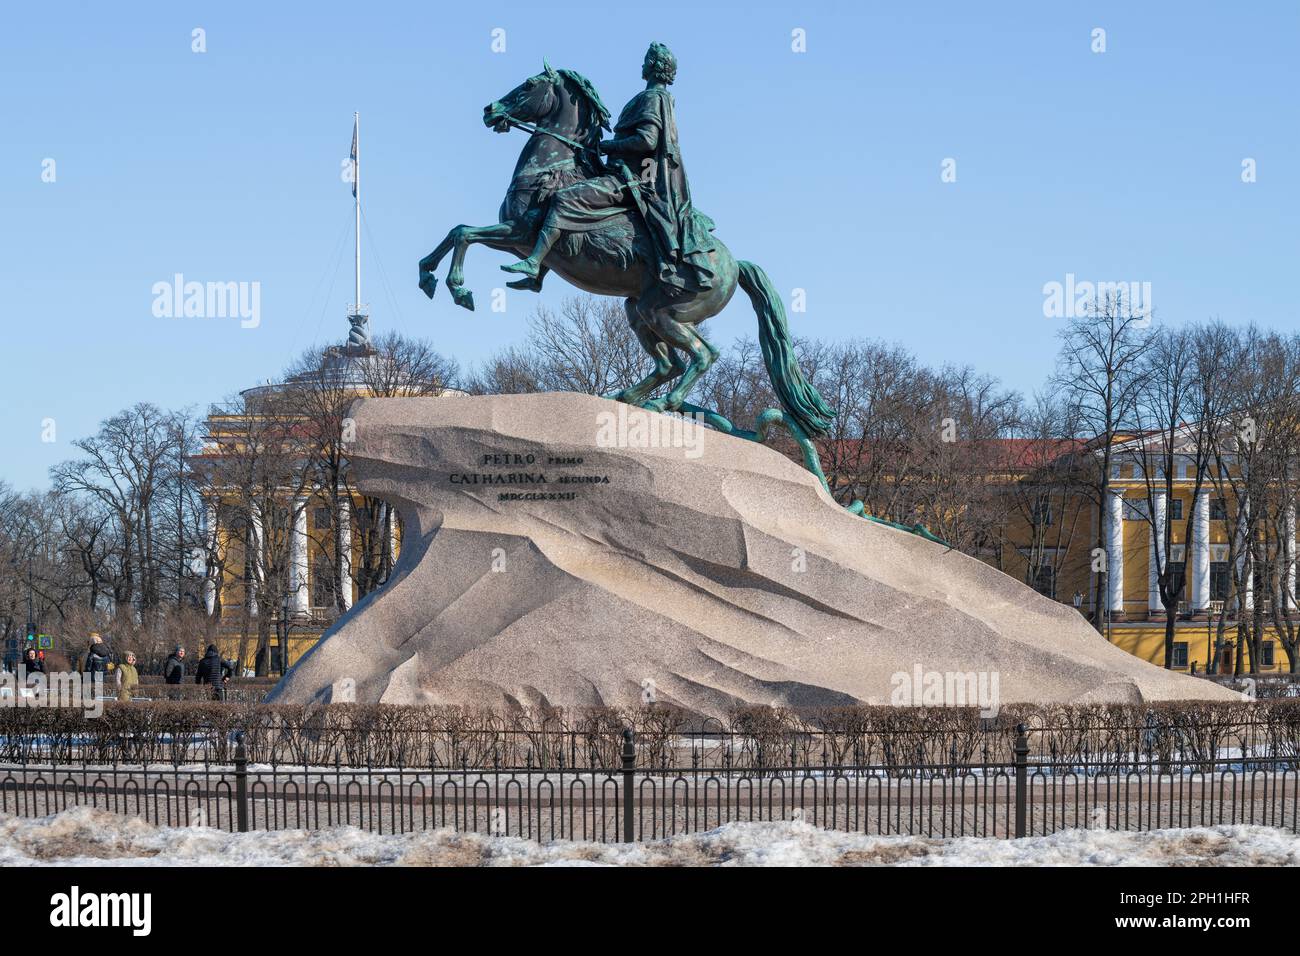 SAINT-PÉTERSBOURG, RUSSIE - 17 MARS 2022 : vue sur le monument de Pierre I (l'Horseman de bronze) le jour de mars ensoleillé Banque D'Images